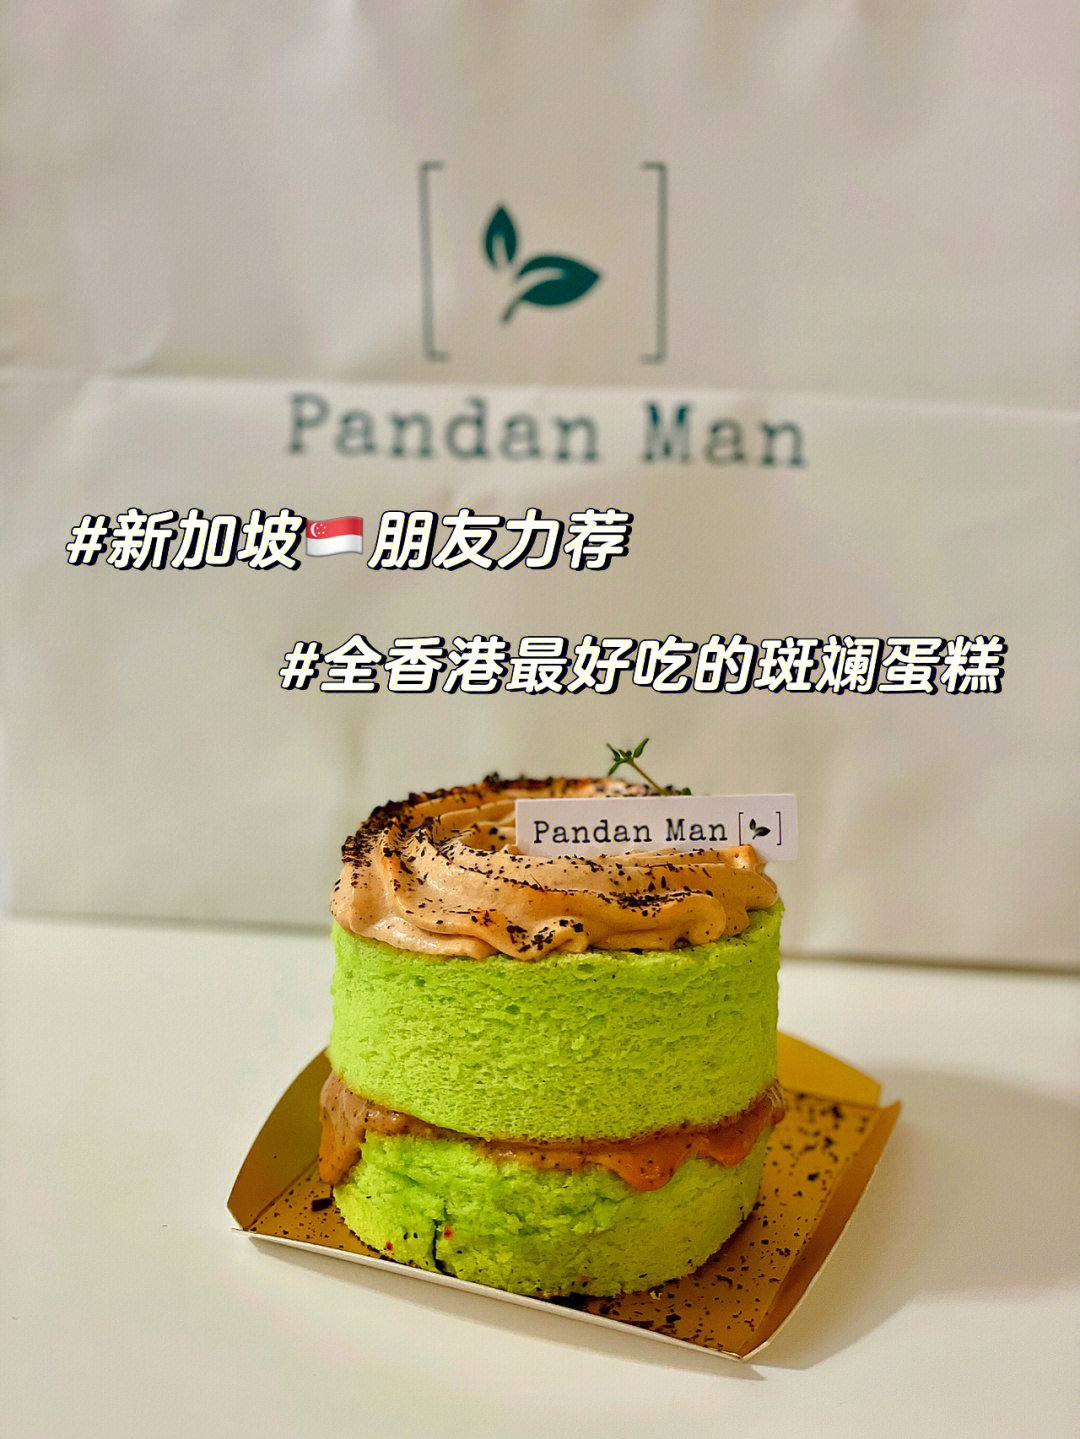 香港最好吃的pandan斑斓蛋糕,甚至可能也许比新加坡樟宜机场的还要